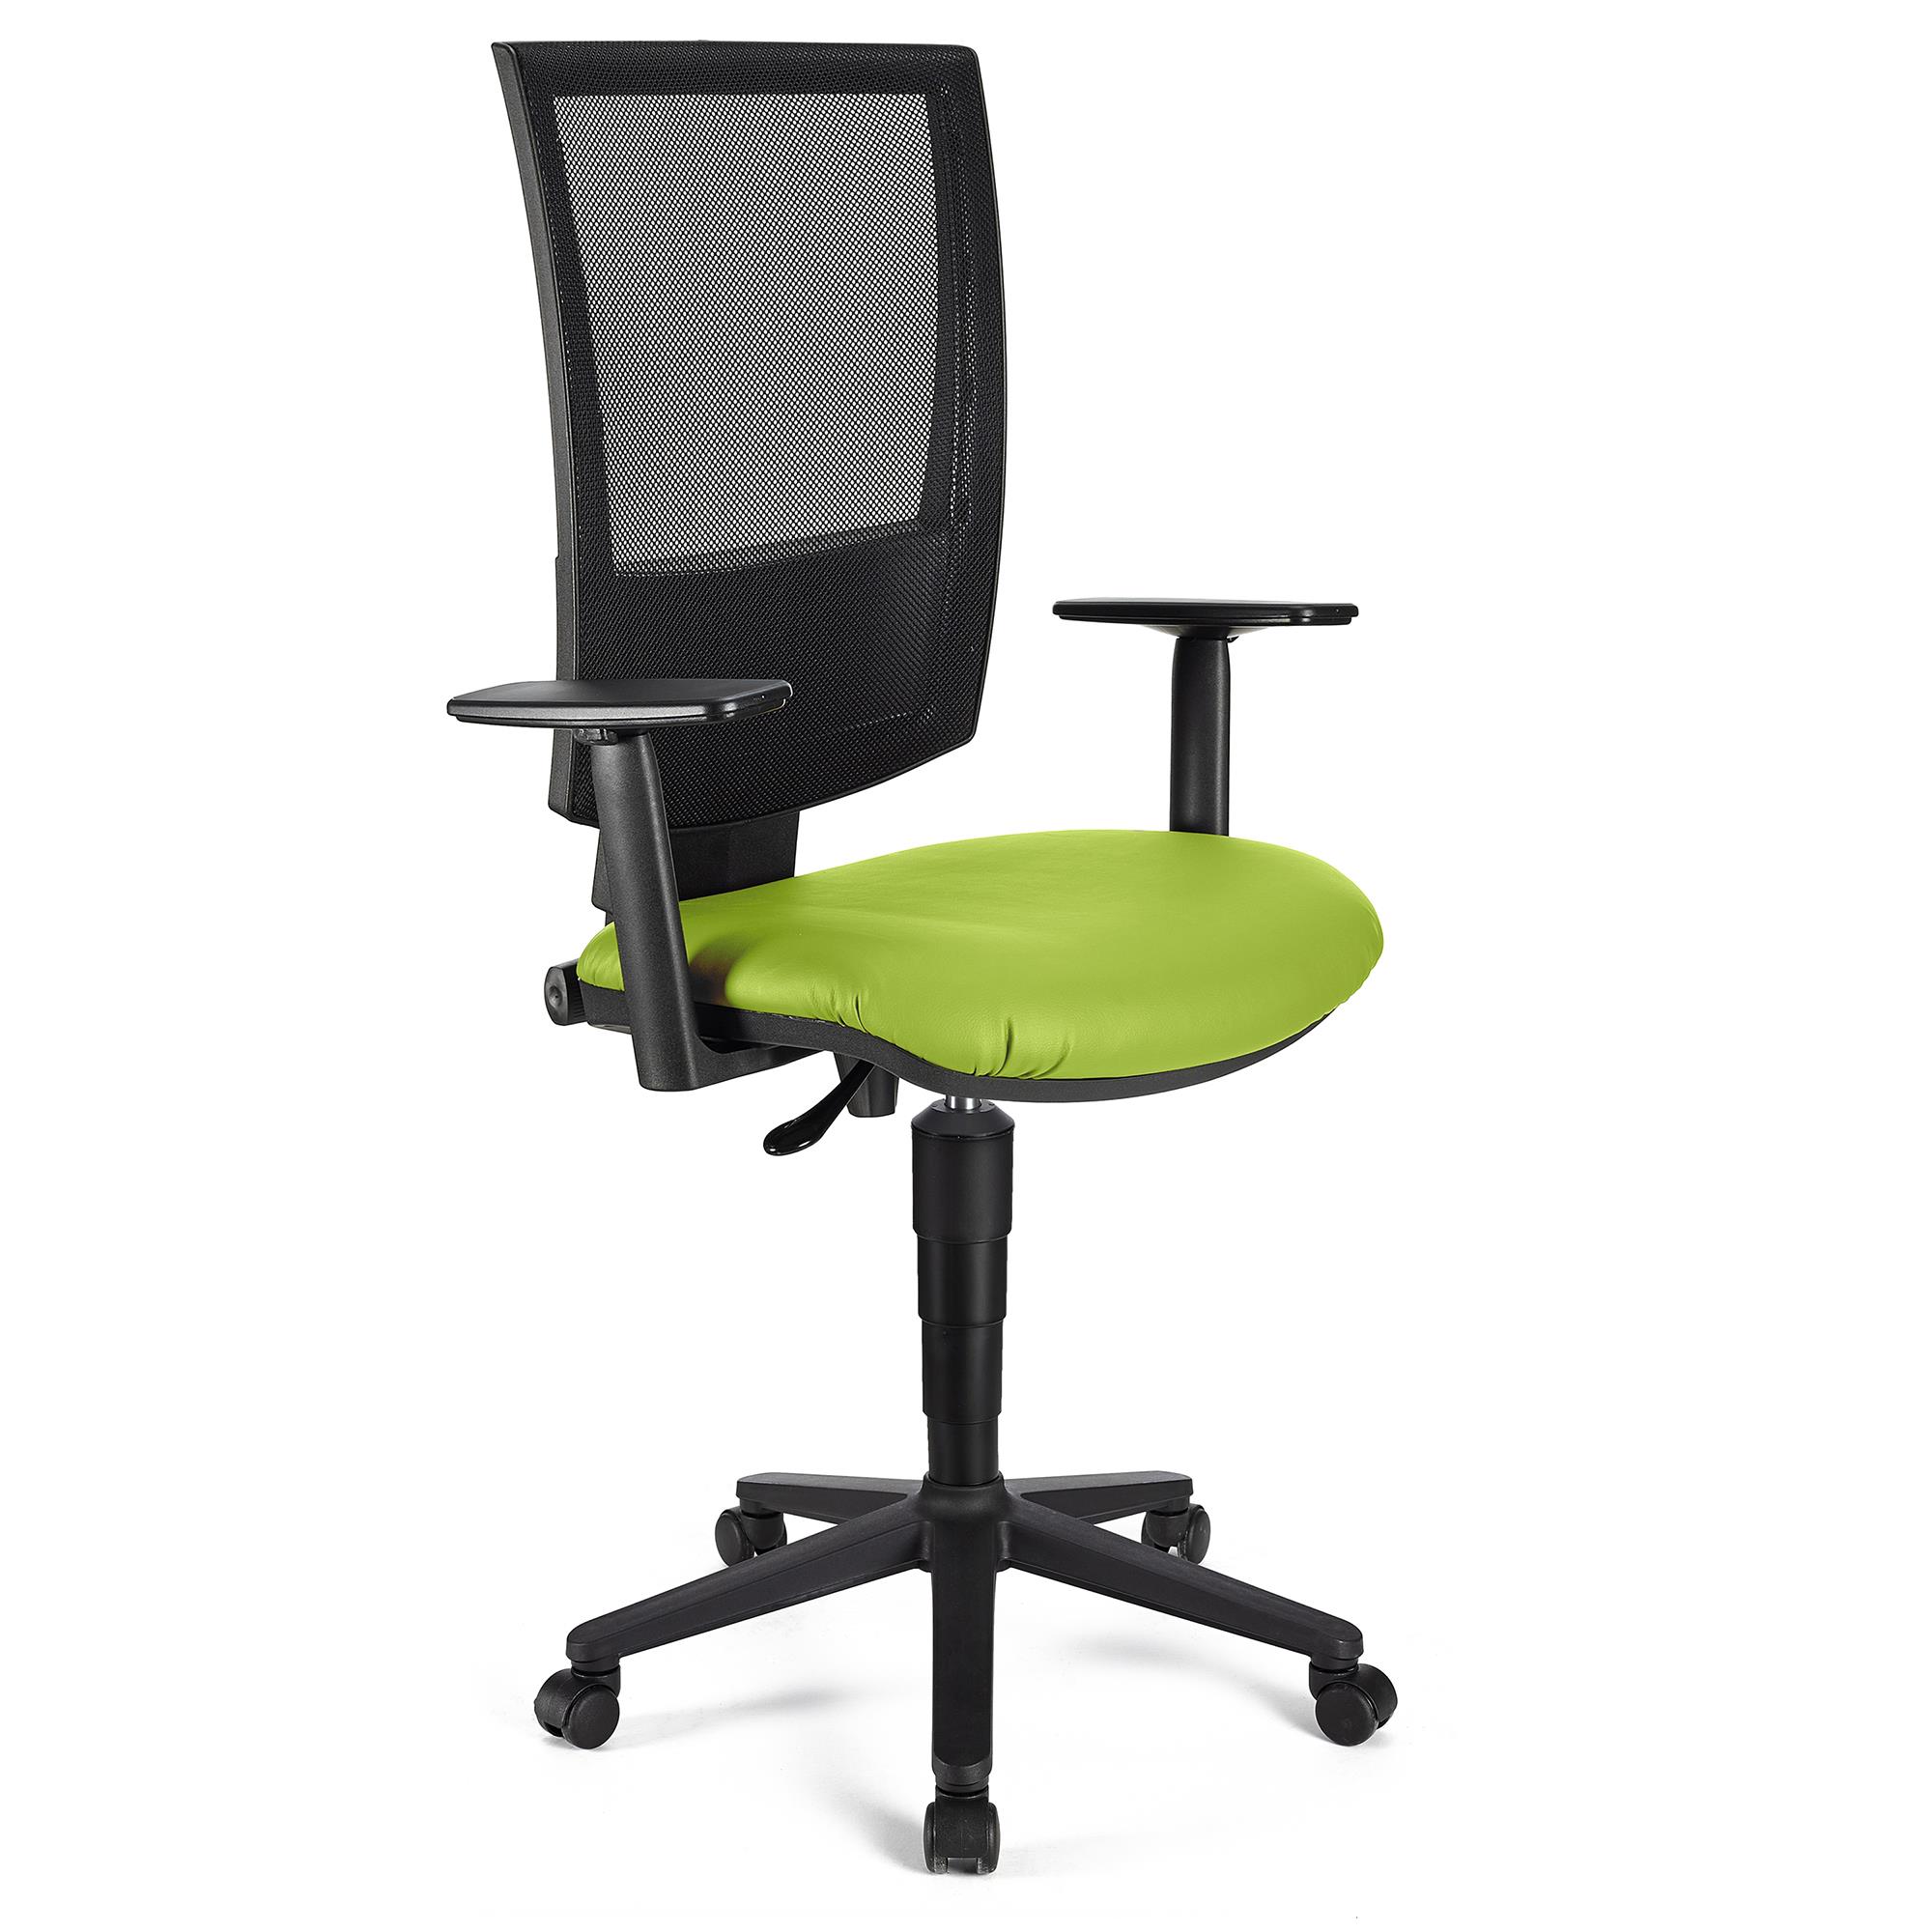 Bürostuhl PANDORA PLUS LEDER mit verstellbaren Armlehnen, Rückenlehne mit Netzbezug, dicke Polsterung, Farbe Grün